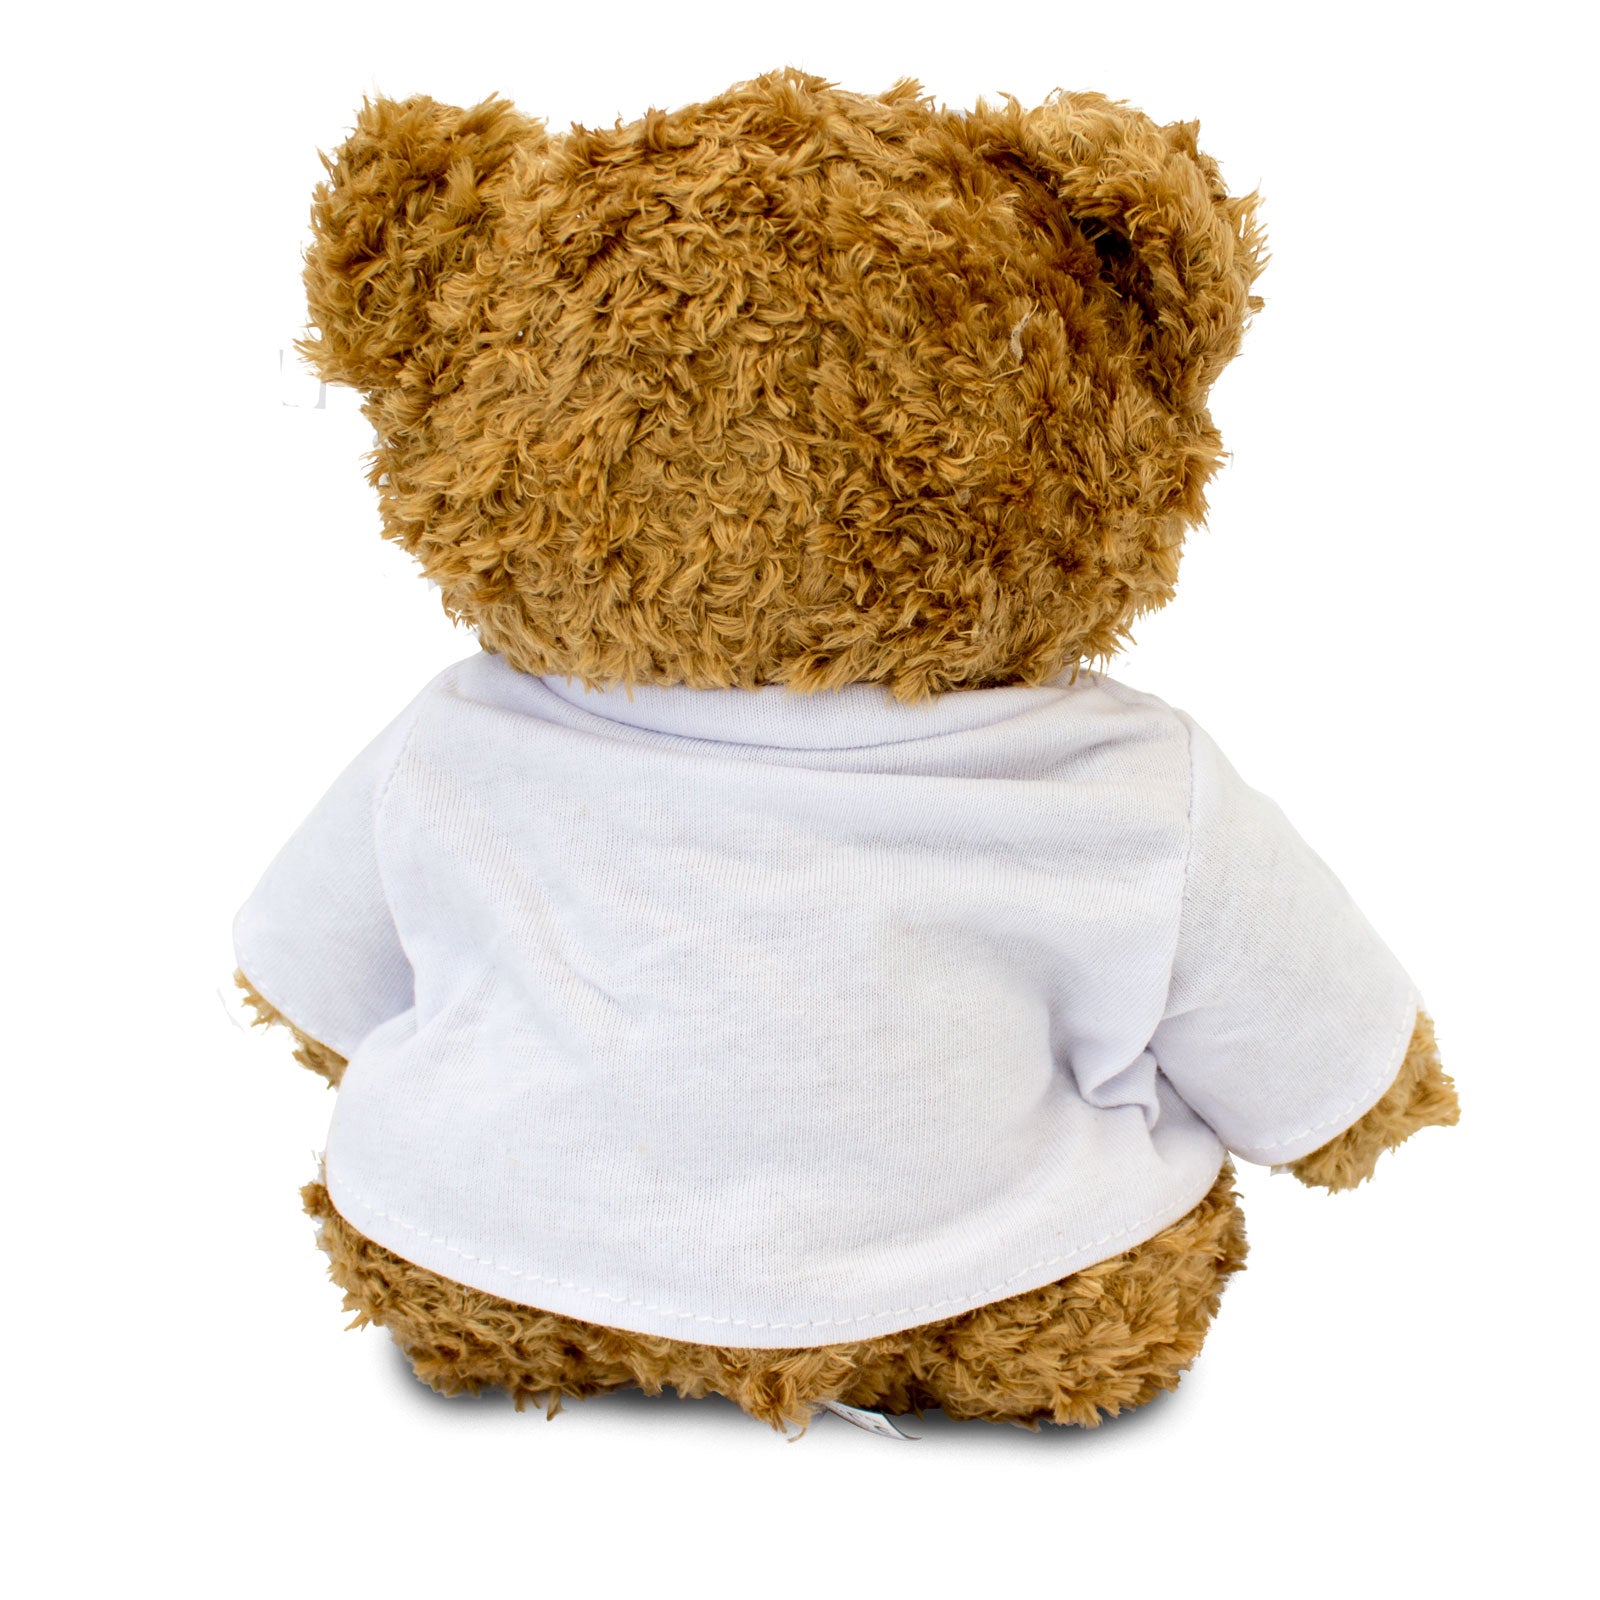 Get Well Soon Gareth - Teddy Bear